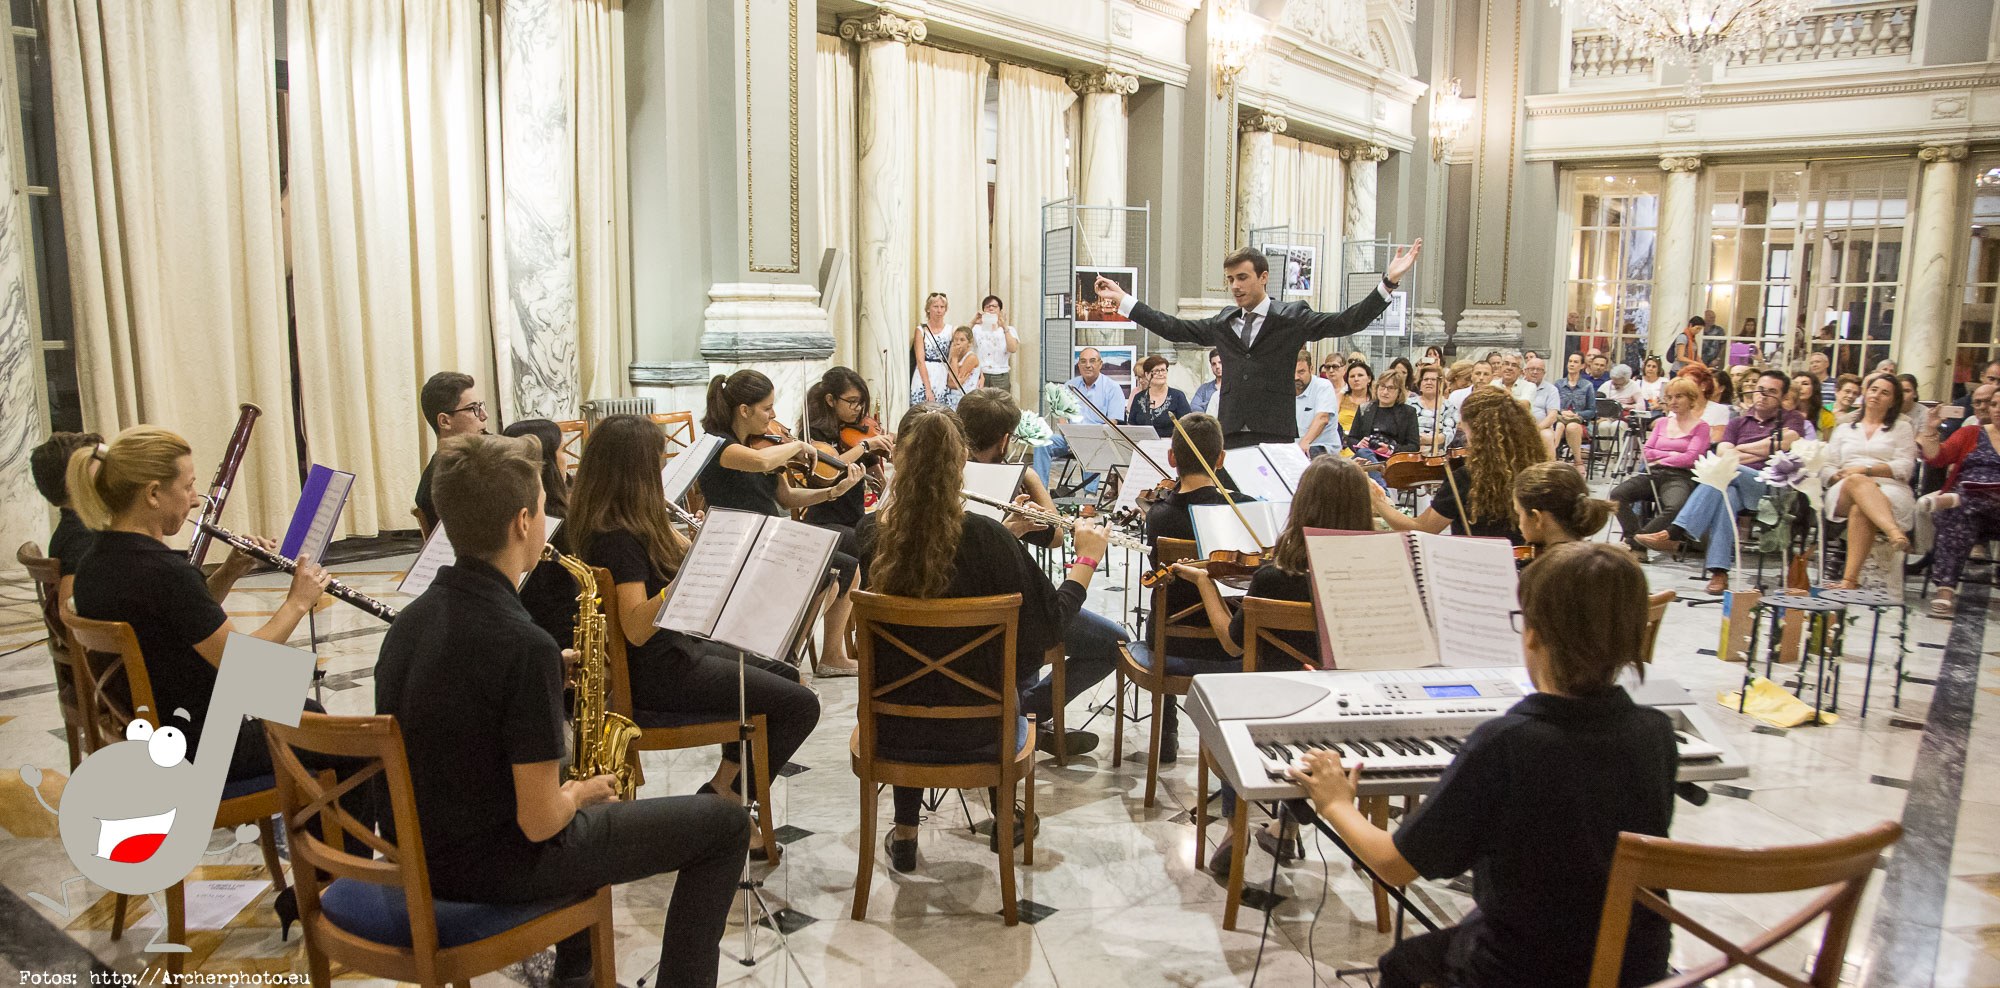 Scordae, orquesta sinfónica infantil en el Ayuntamiento de Valencia por Archerphoto, fotógrafo profesional